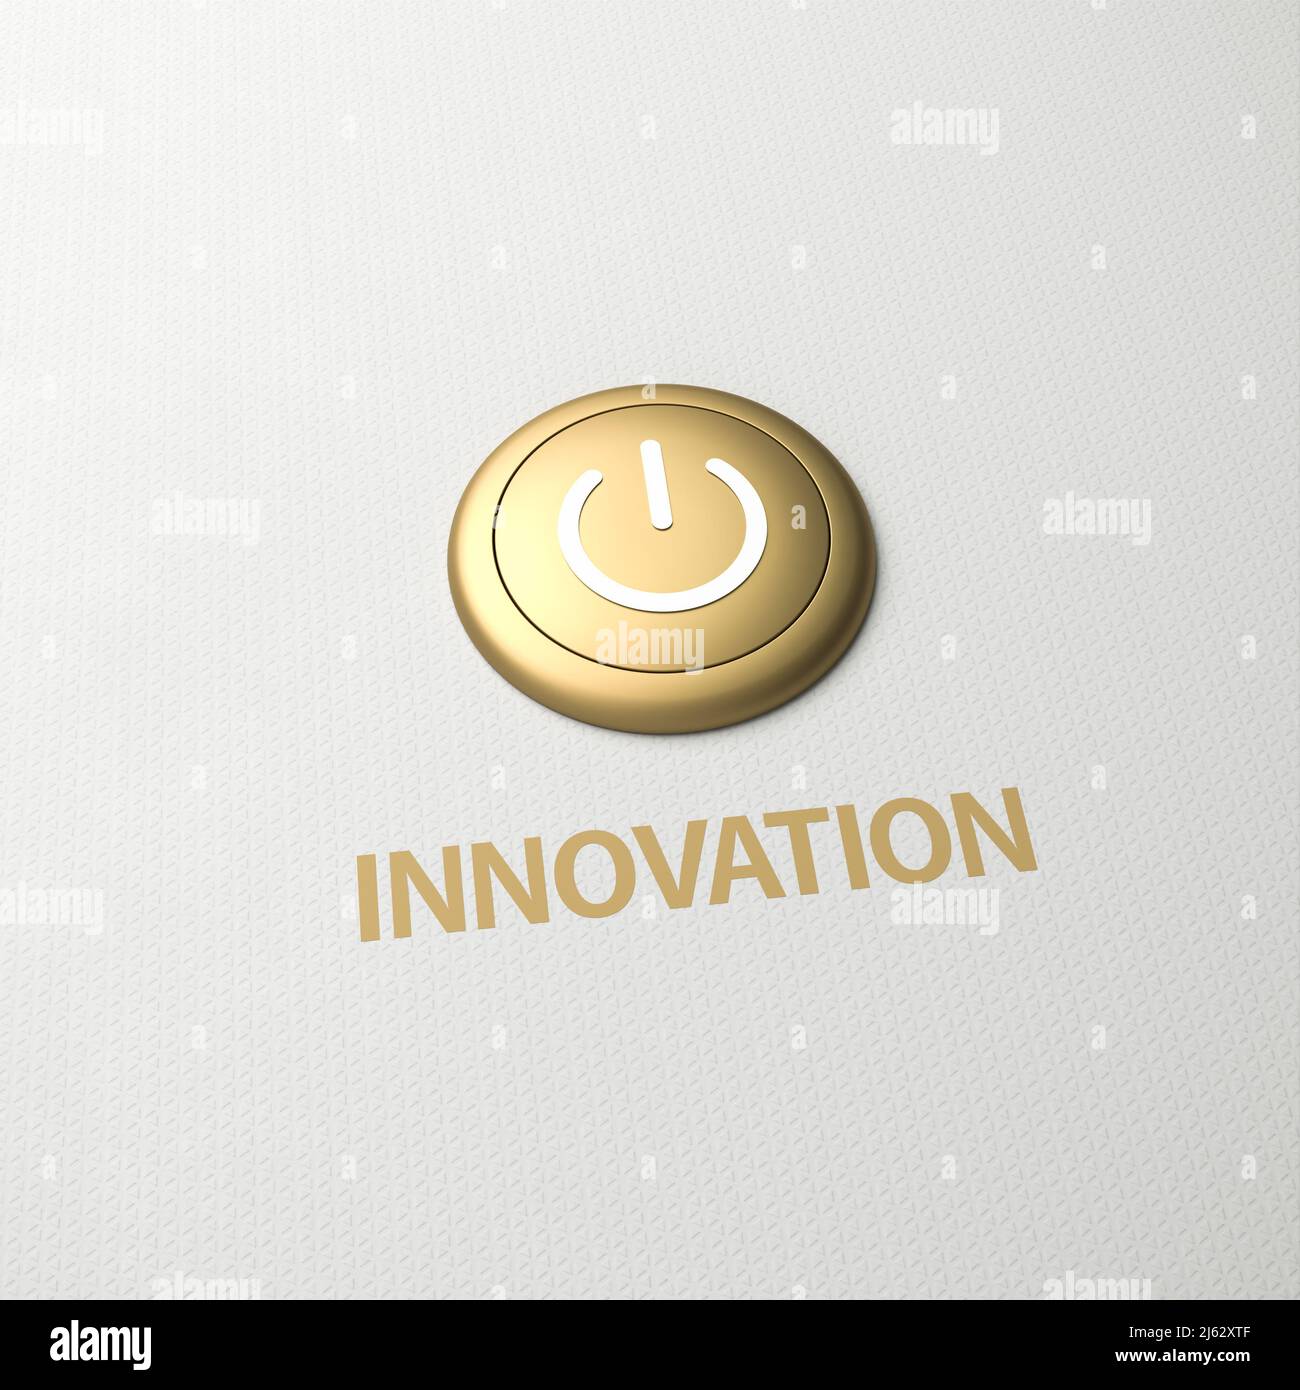 Golden Button mit dem Wort Innovation als Label - Konzept zur Umsetzung von Maßnahmen zur Umstellung auf Innovation. Platz zum besseren Zuschneiden kopieren Stockfoto